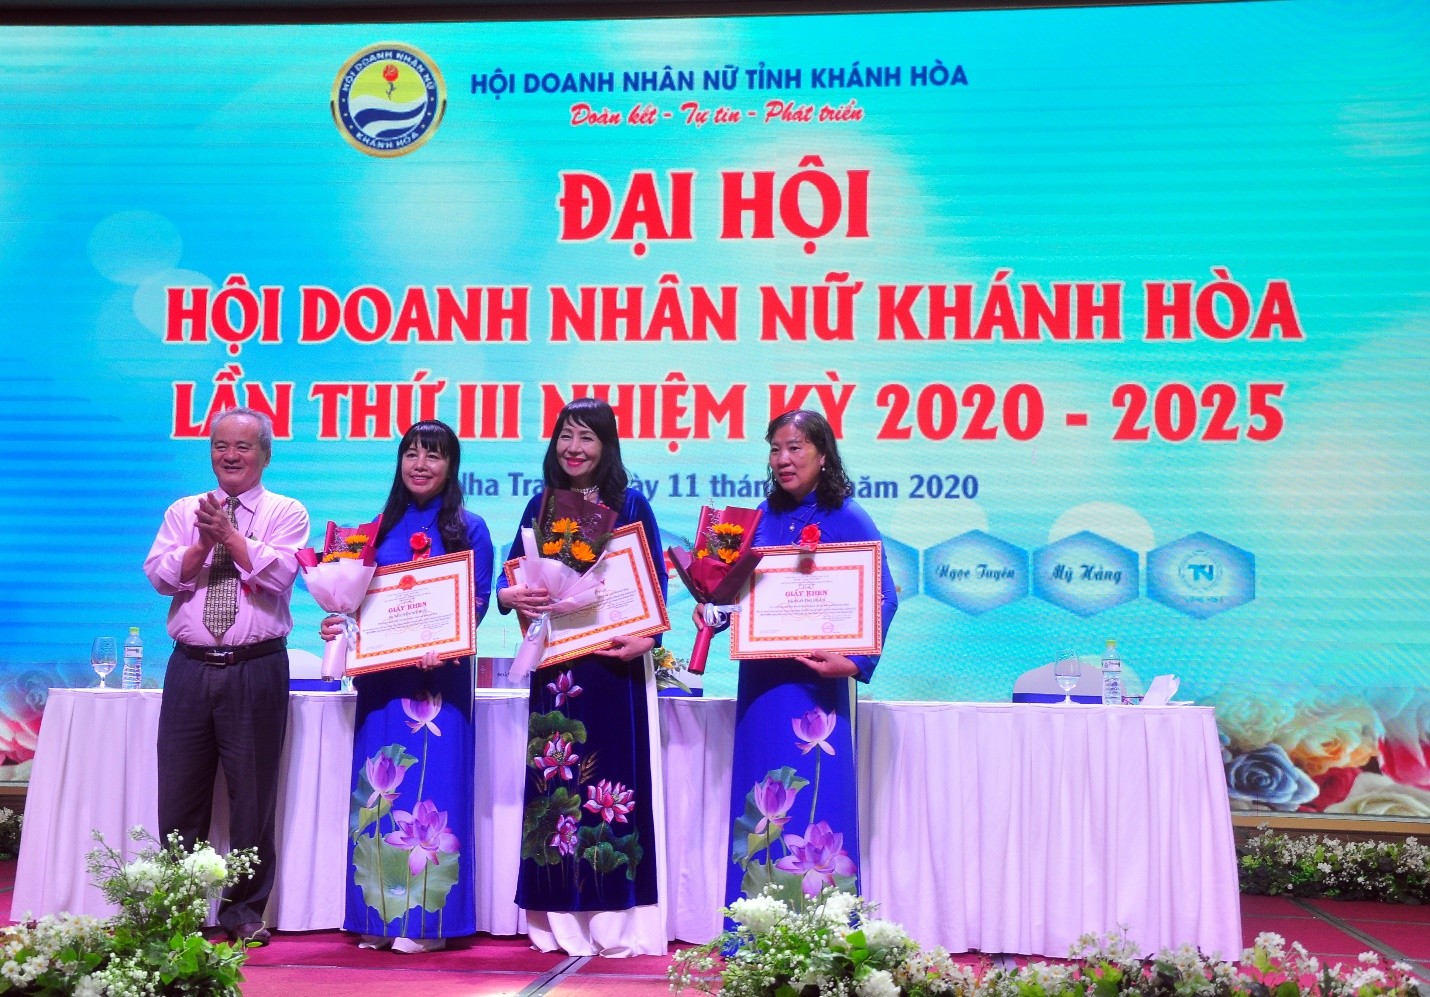 Ông Bùi Mau, Chủ tịch Hội Liên Hiệp các Hội Khoa Học tỉnh Khánh Hòa, tặng khen thưởng Tập thể Hội Doanh Nhân Nữ Khánh Hòa và cá nhân